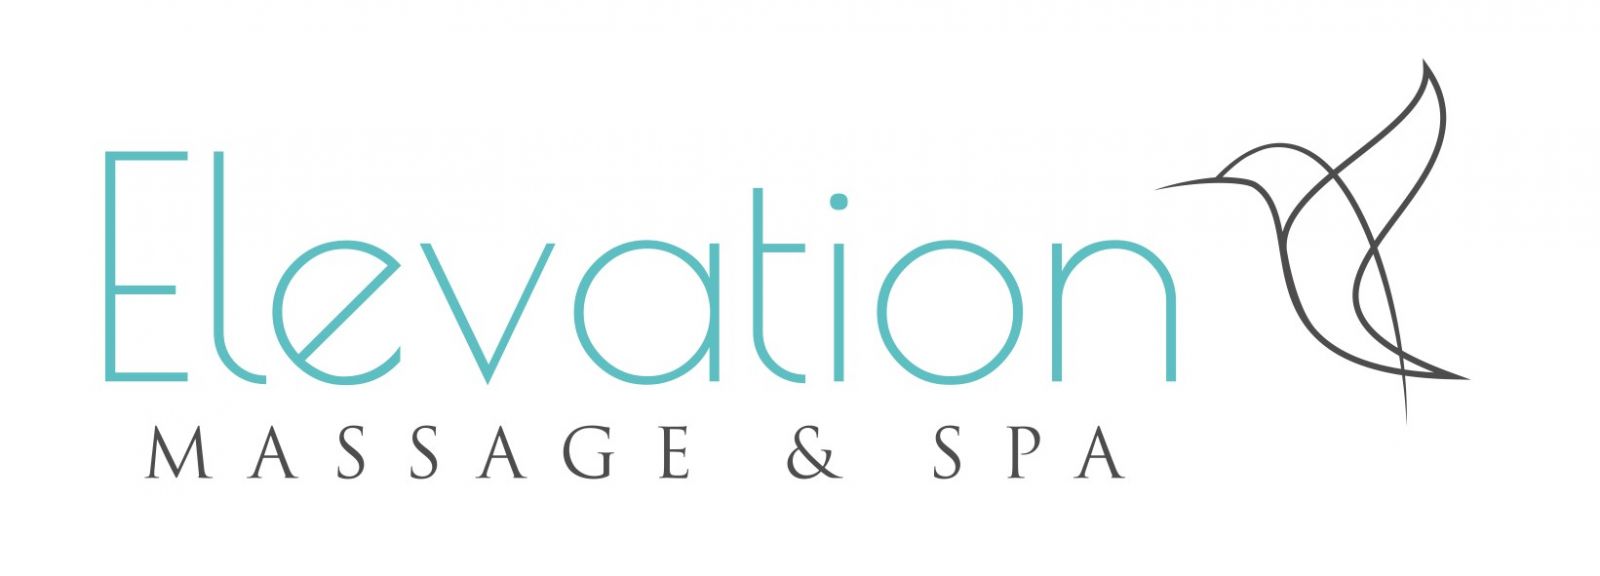 Elevation Massage and SpaElevation Massage and Spa